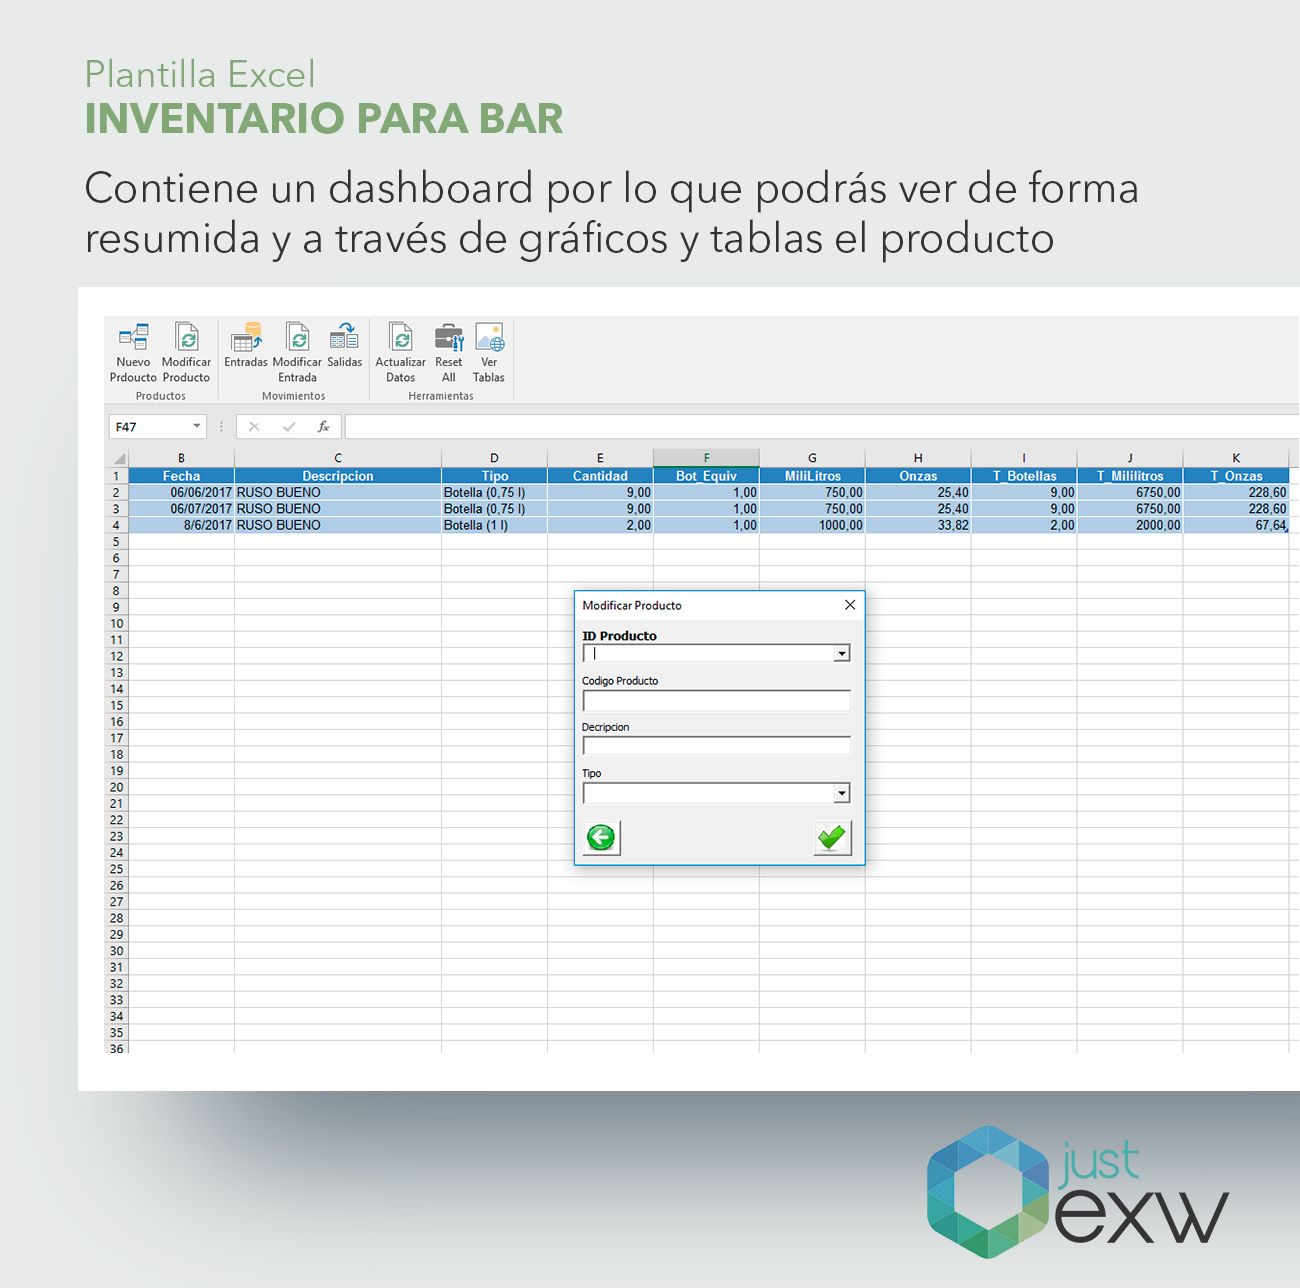 Plantilla Excel Premium Inventario para Bar | Justexw